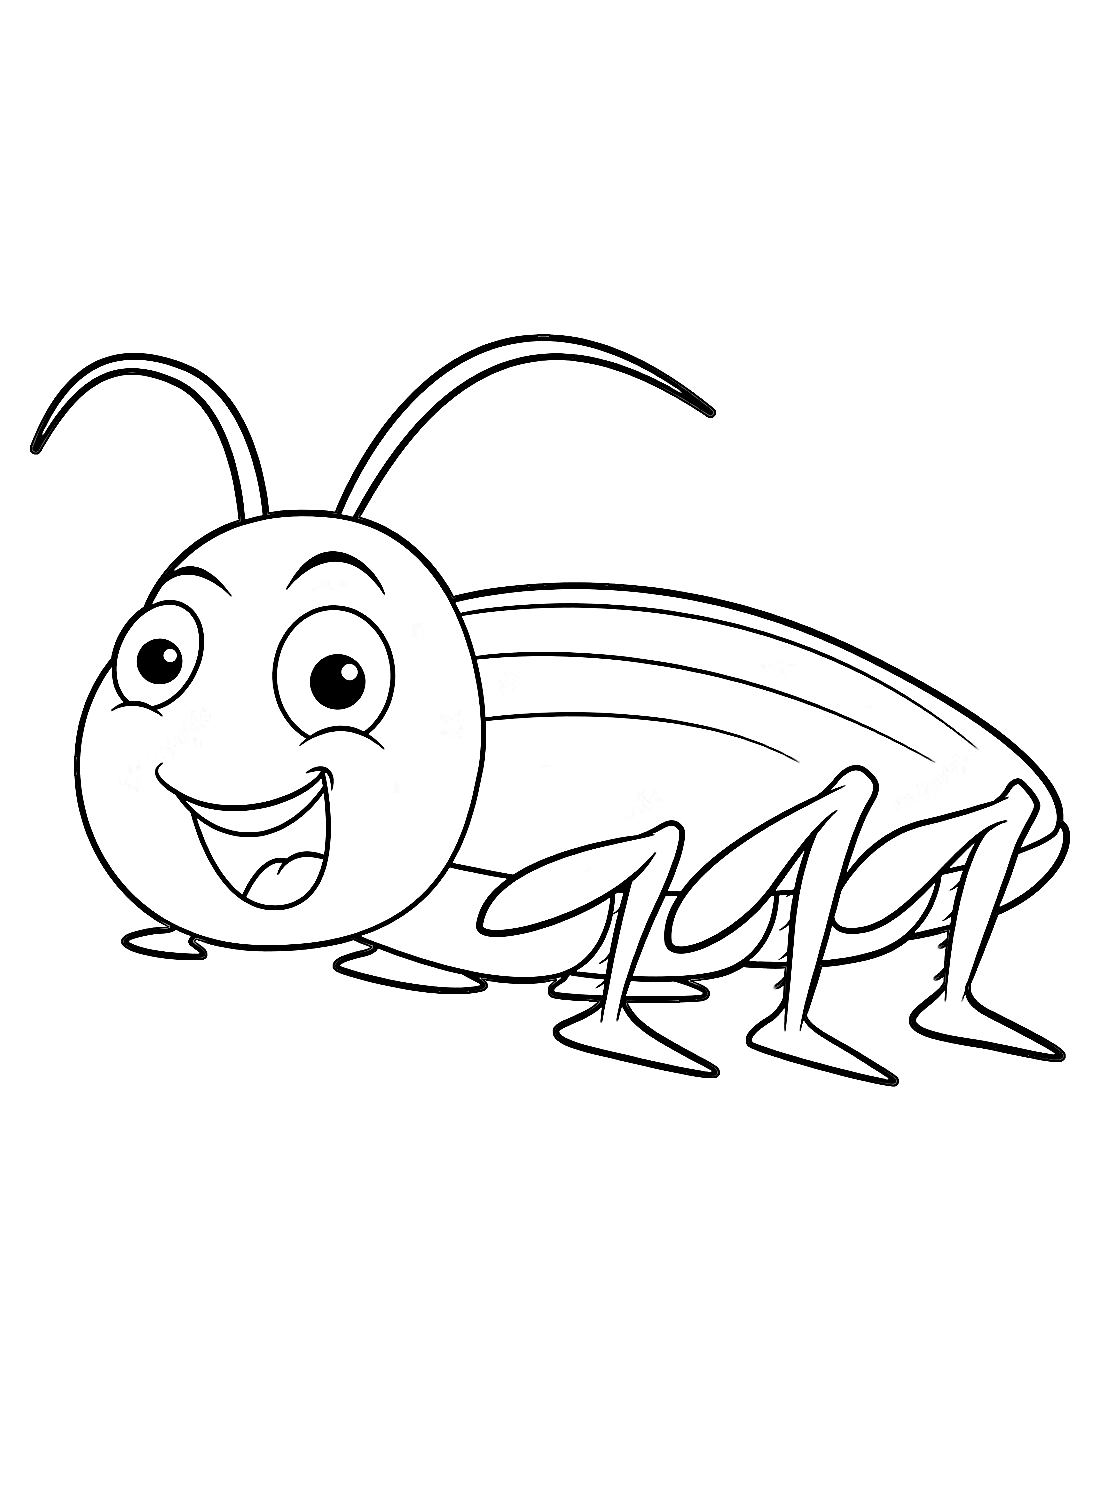 Una cucaracha divertida de dibujos animados de Cucaracha